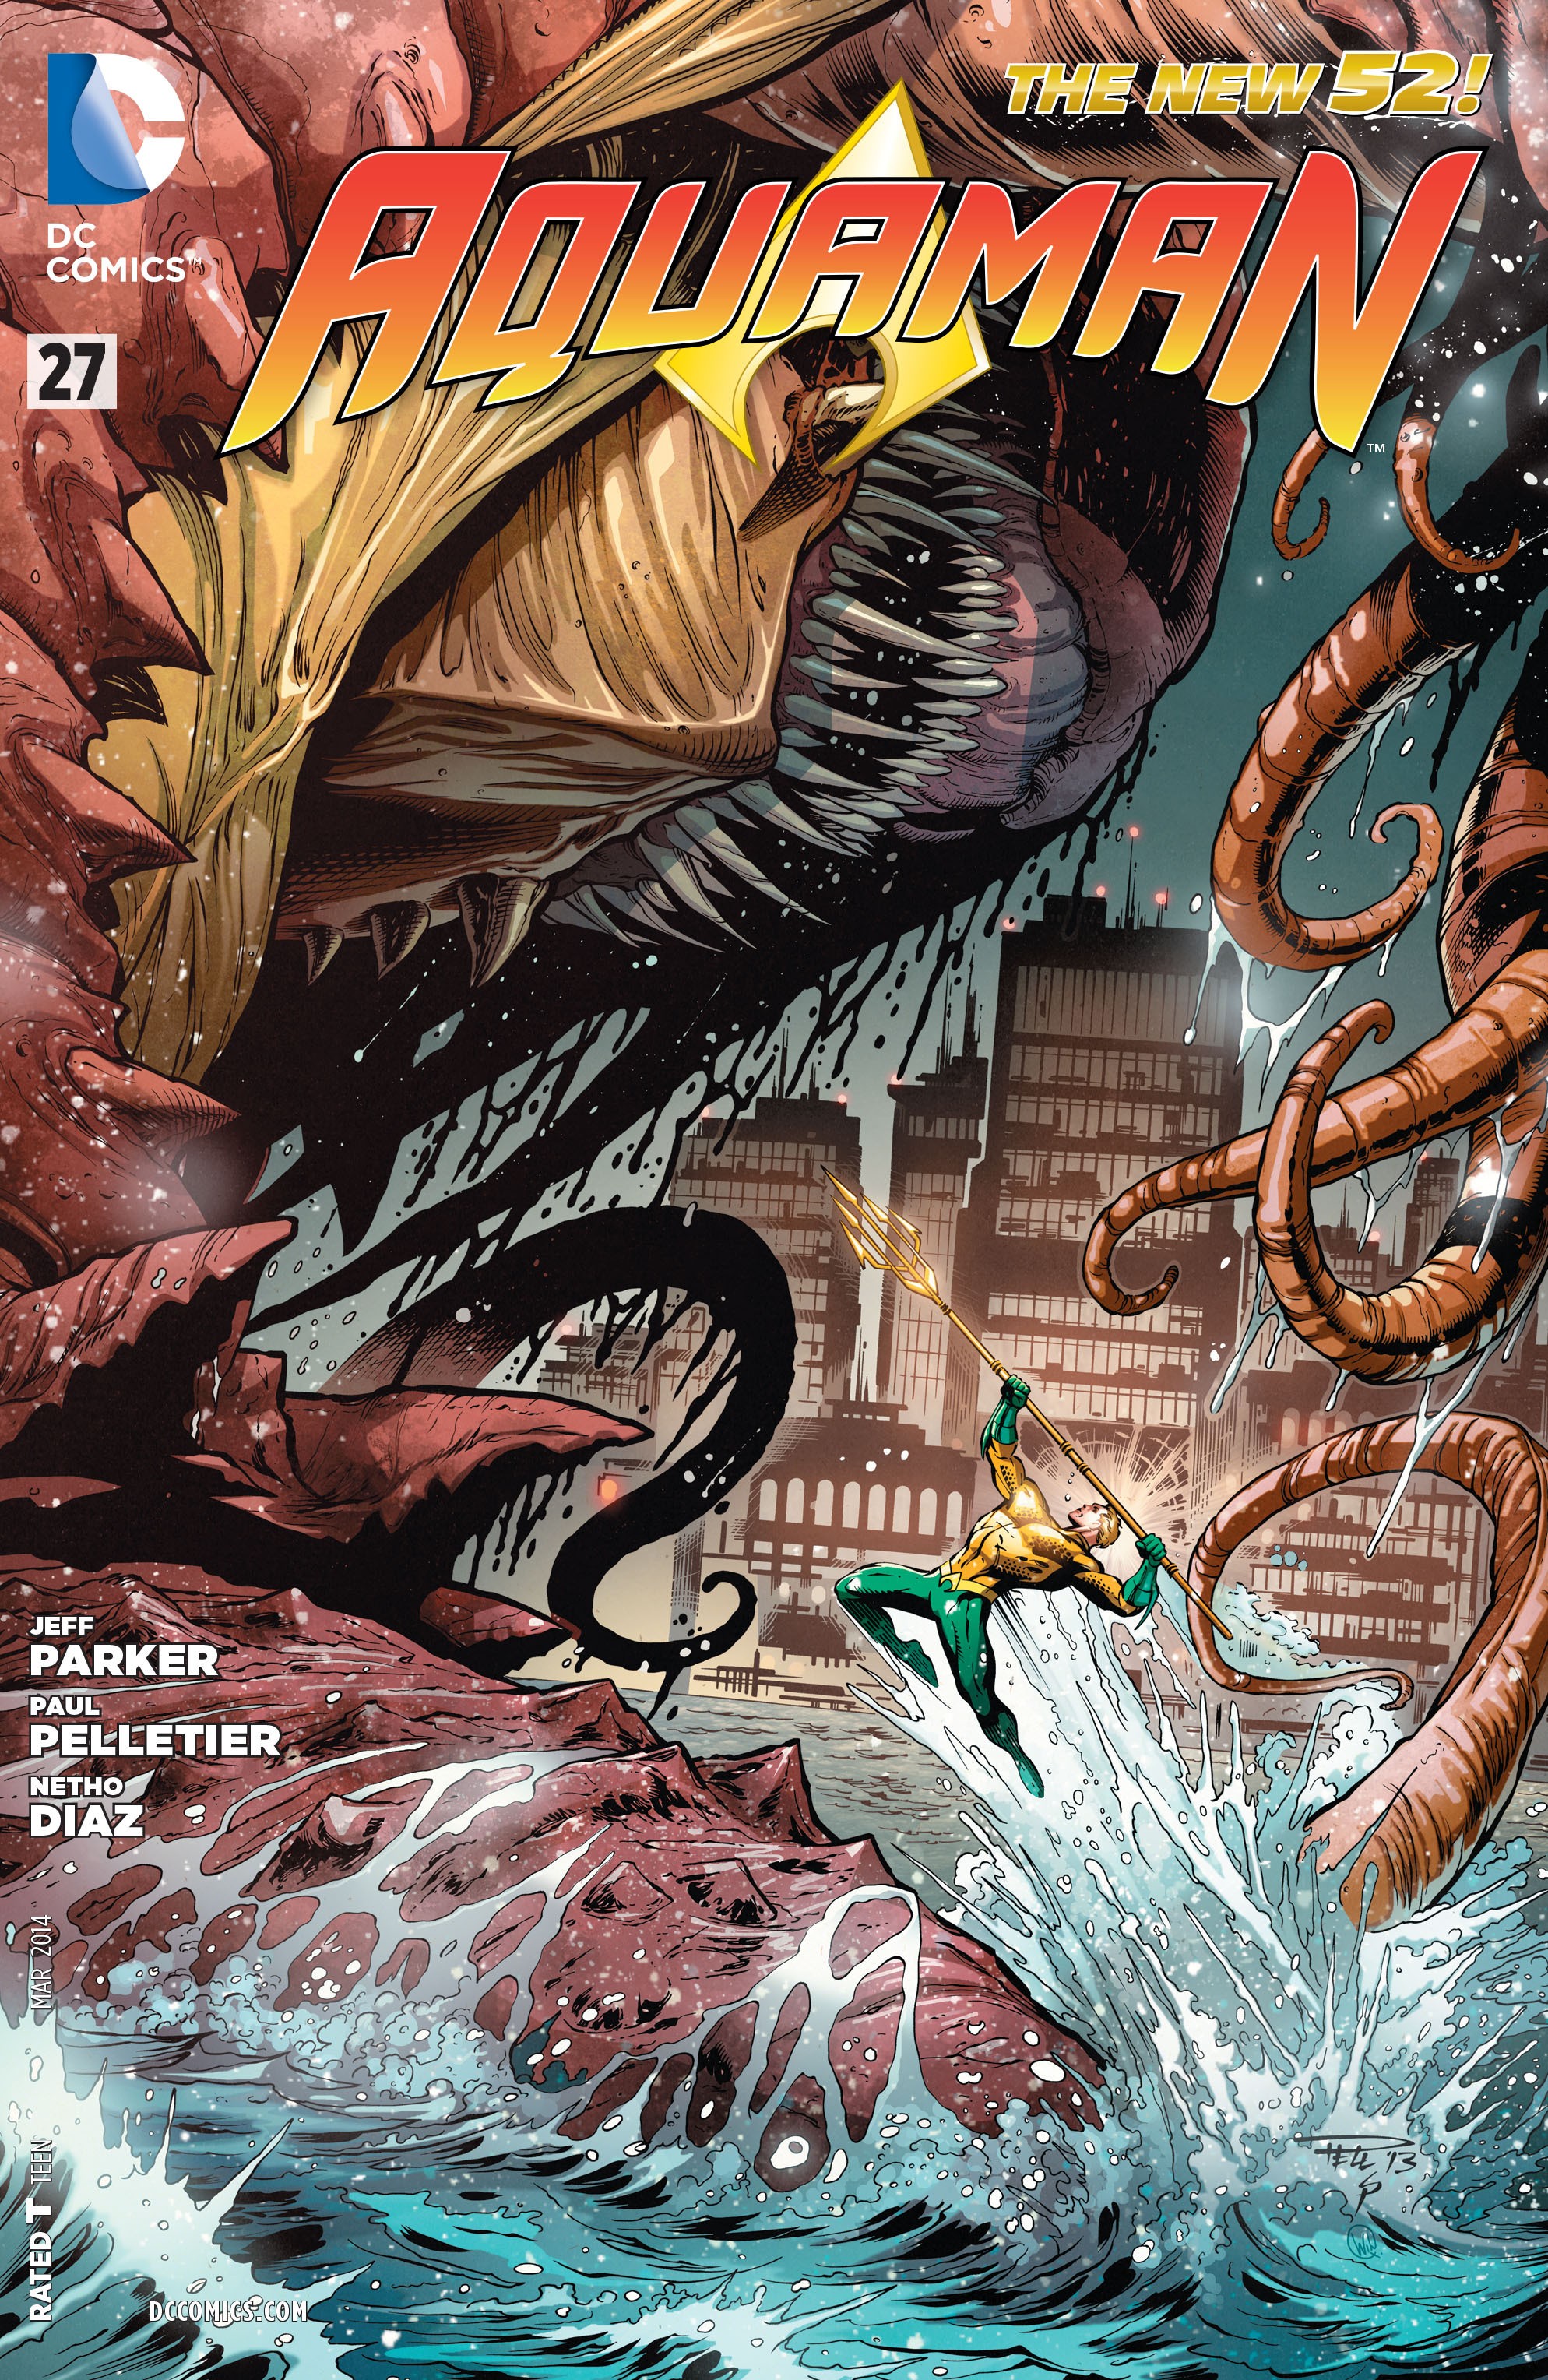 Aquaman Vol. 7 #27